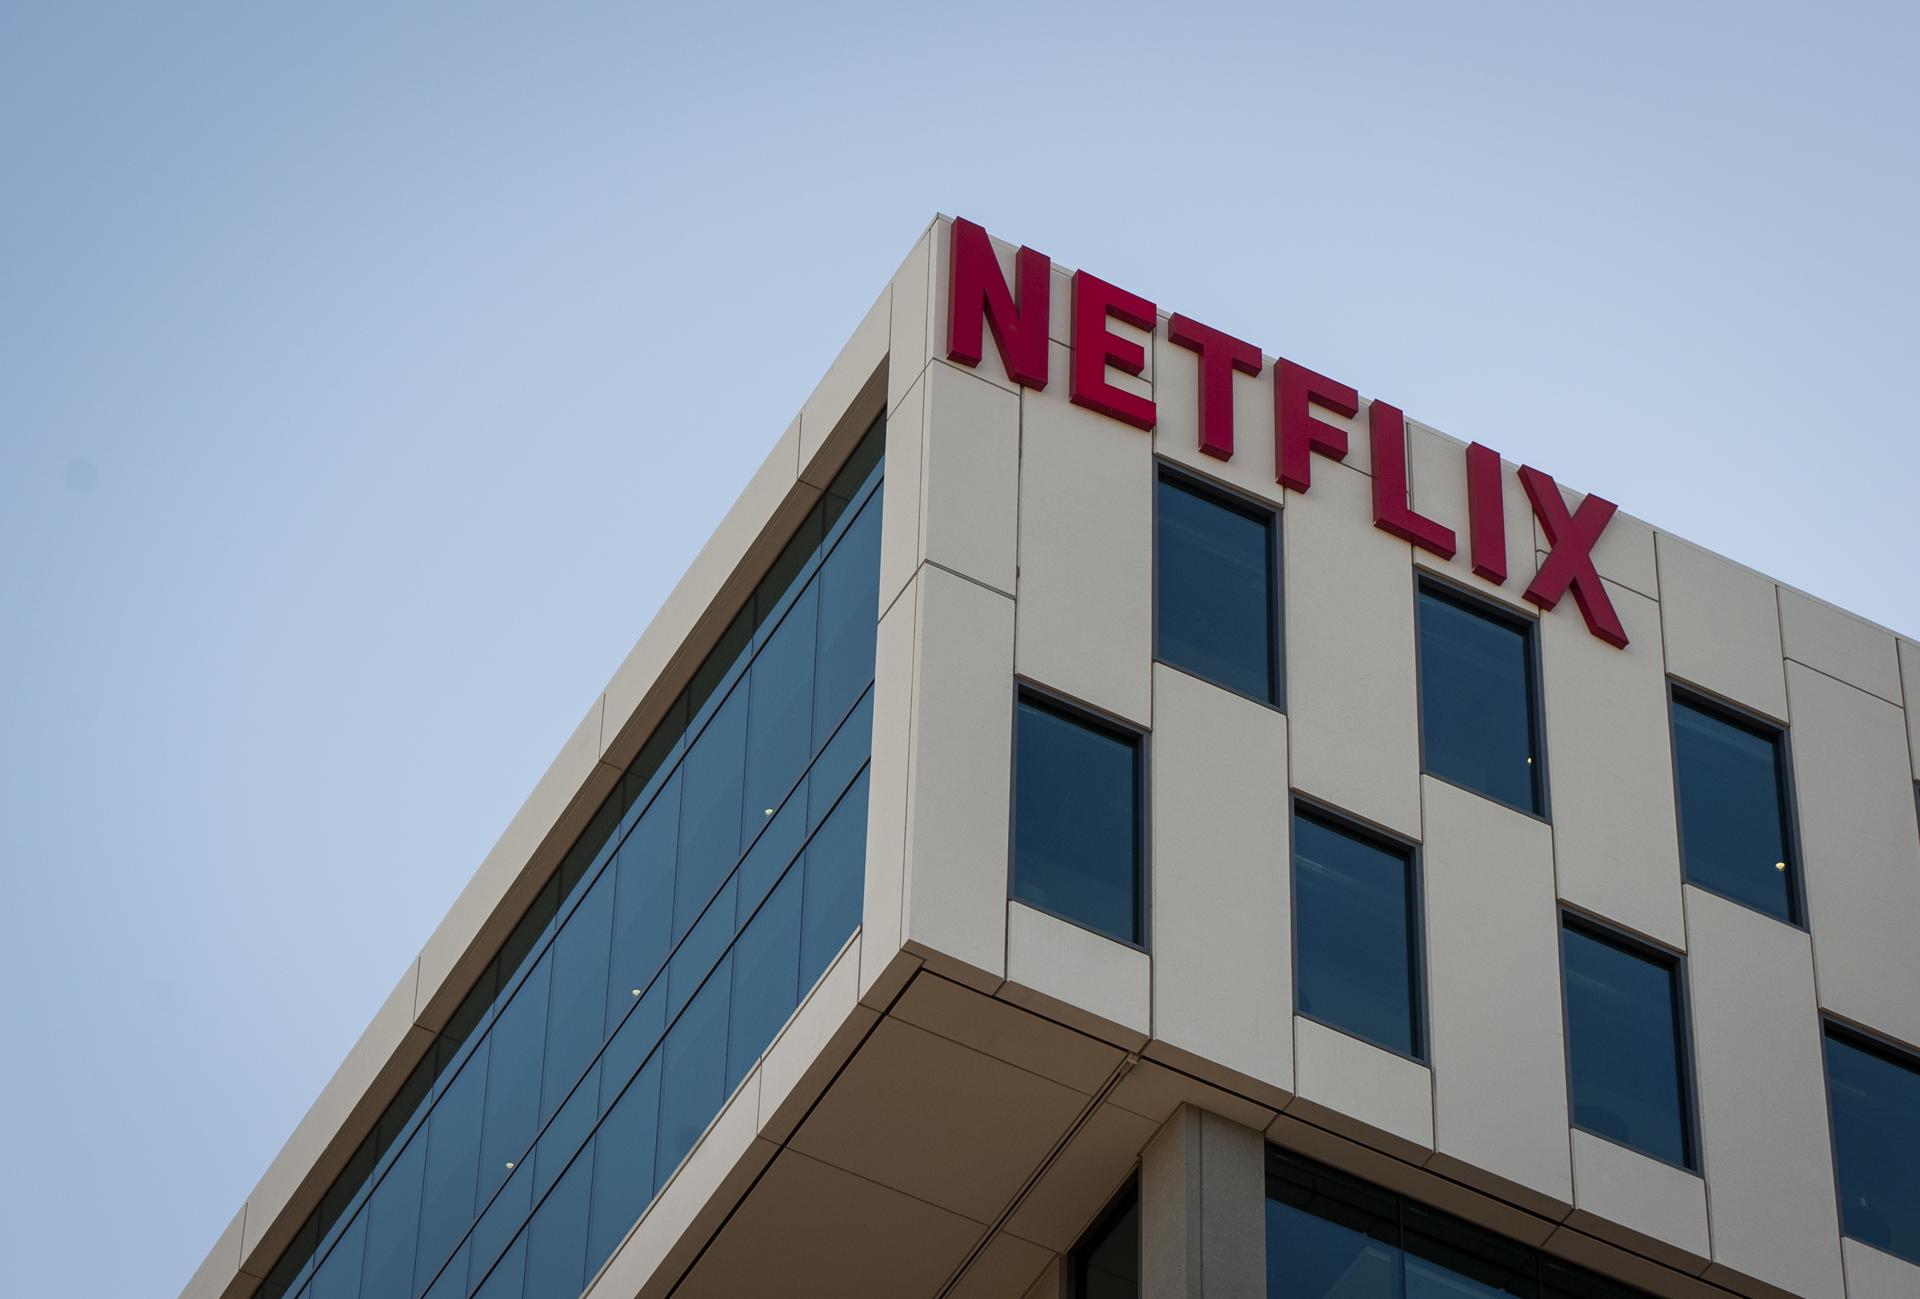 El logotipo de Netflix cuelga del edificio de la sede de la compañía en Los Ángeles, California, Estados Unidos, en una imagen de archivo. EFE/EPA/CHRISTIAN MONTERROSA